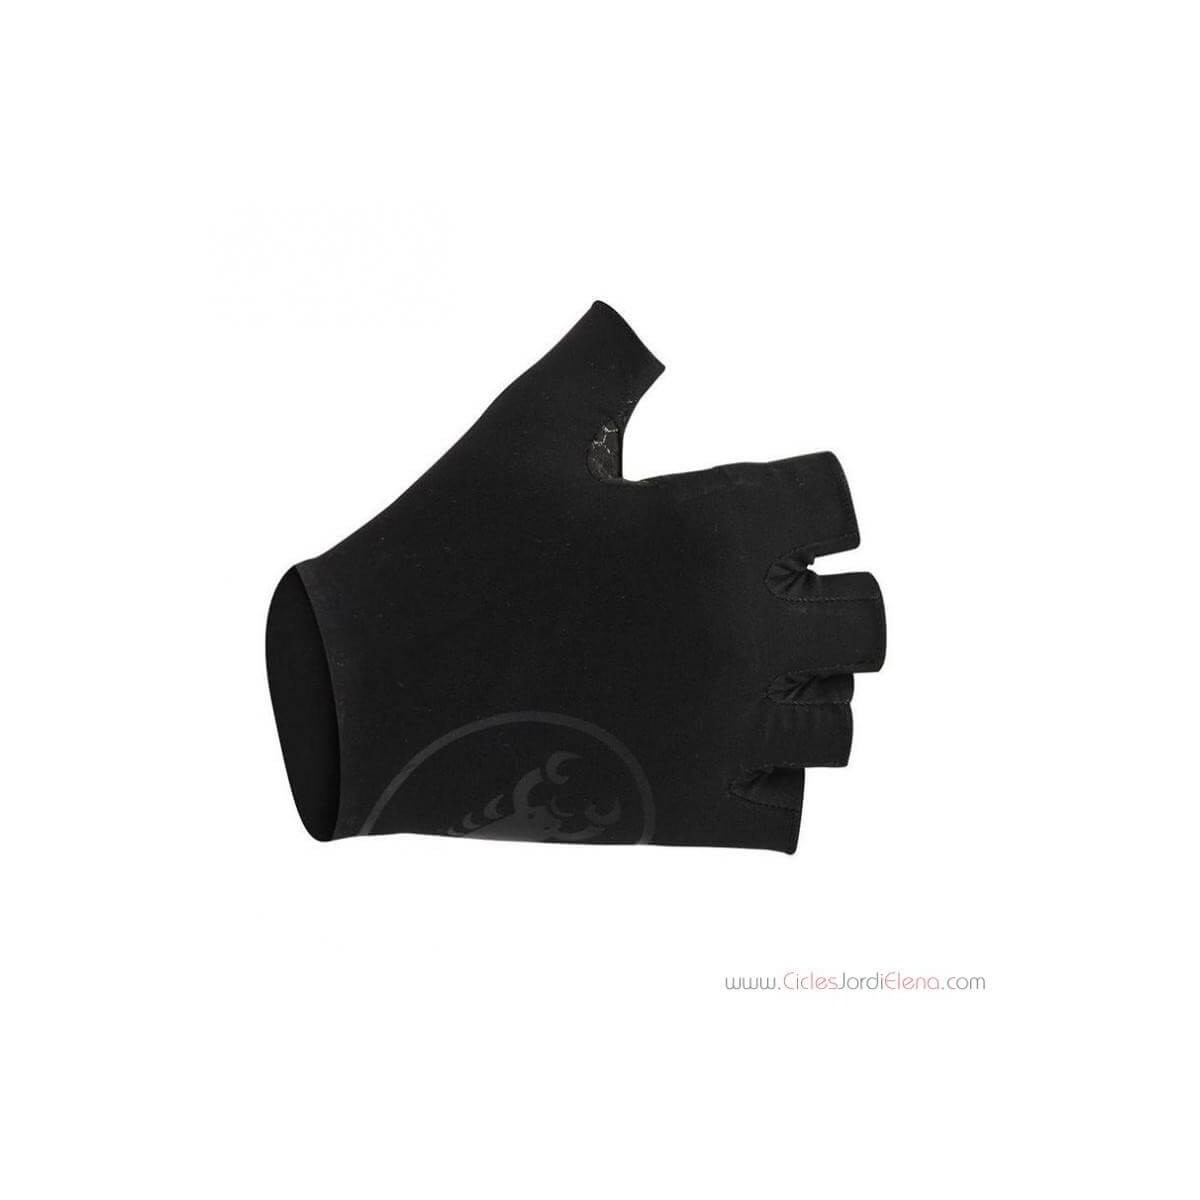 Secondapelle Castelli Gloves Black, Size XL